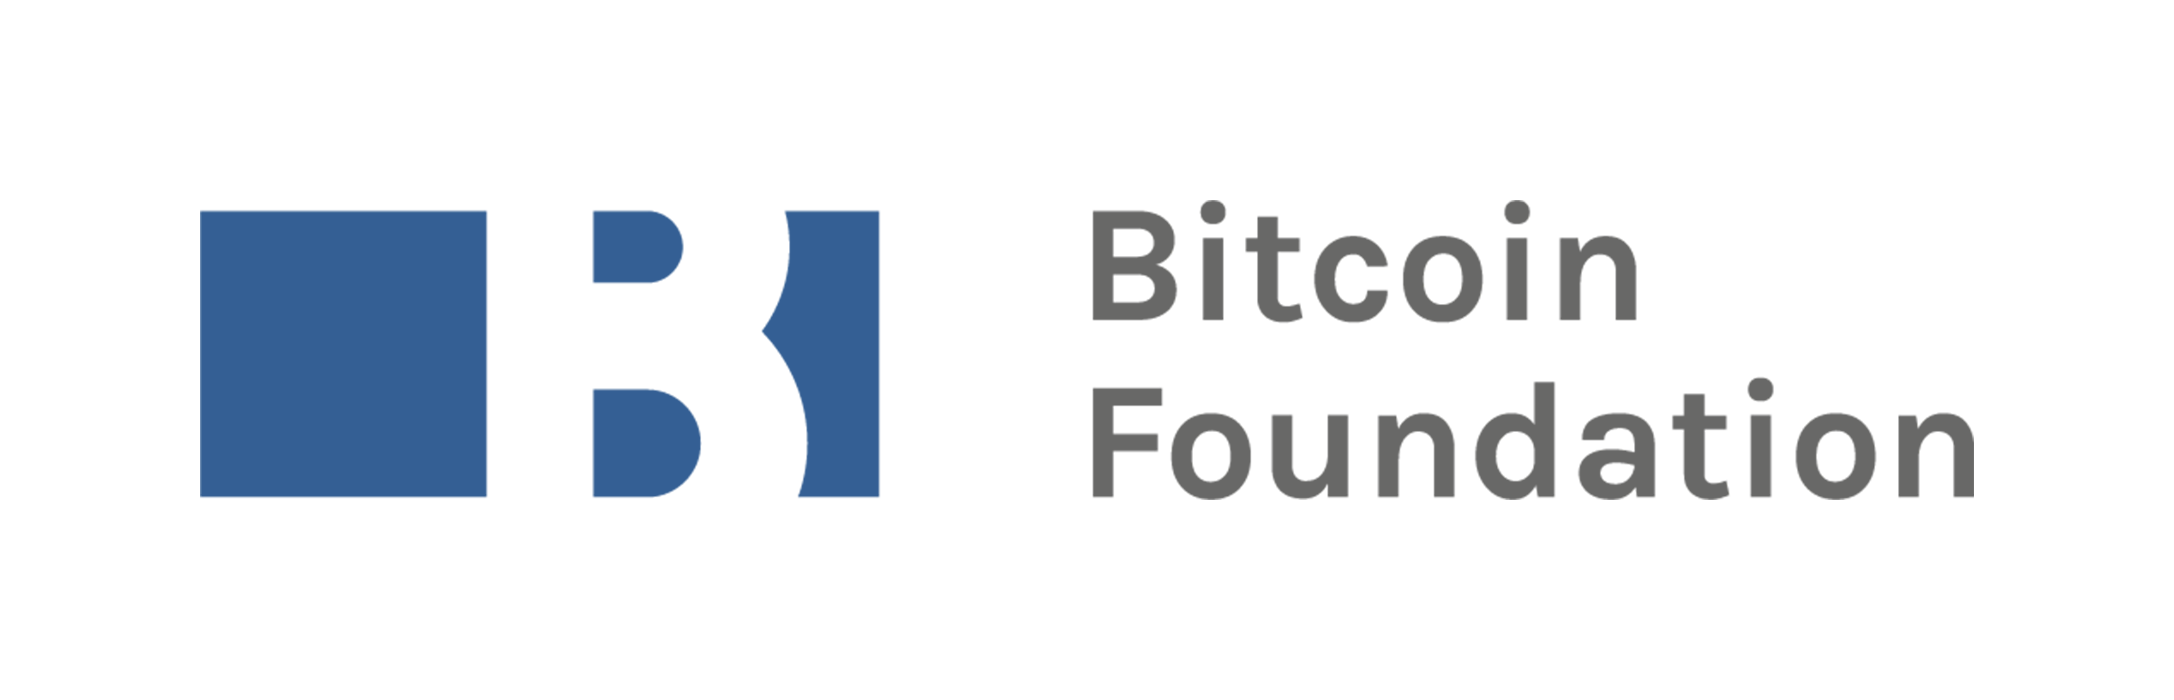 Bitcoin Foundation's Gavin Andresen has code repository access revoked